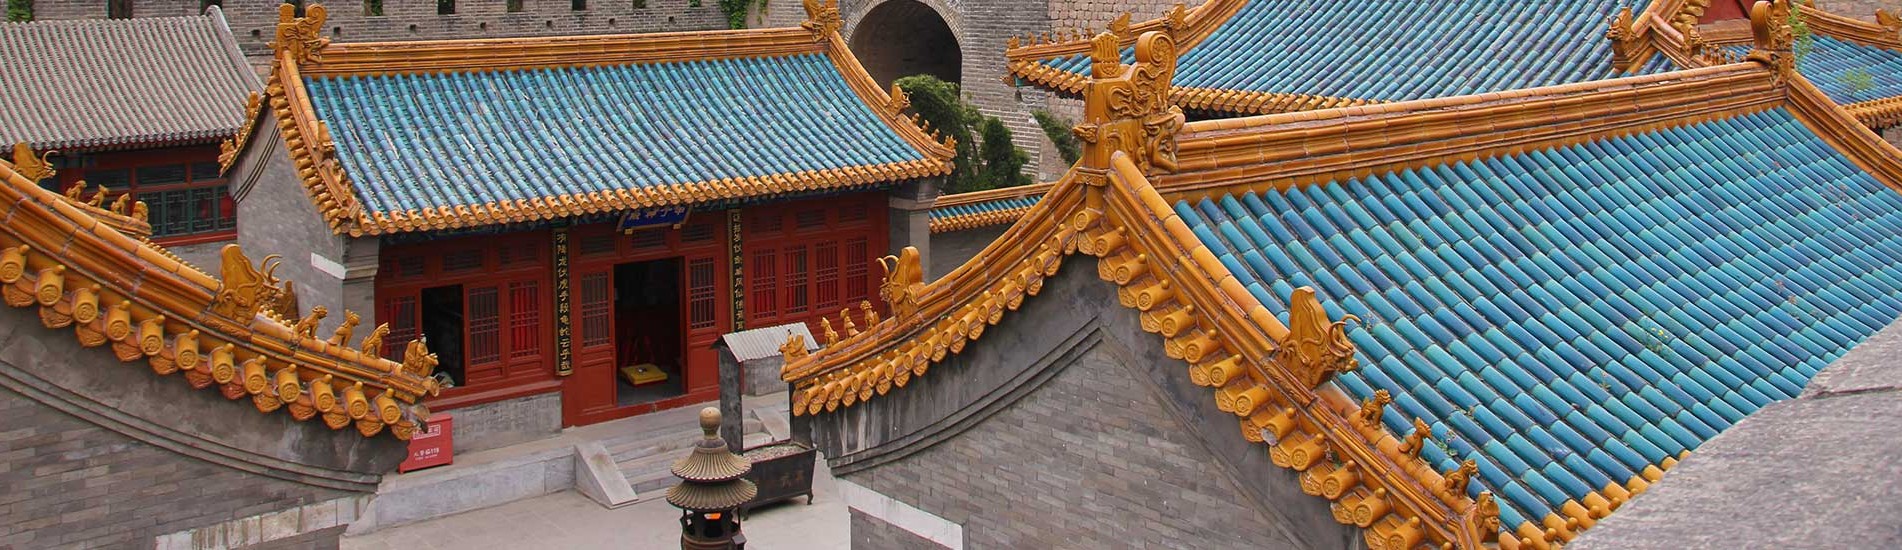 Dachperspektive einer schönen Tempelanlage in China.